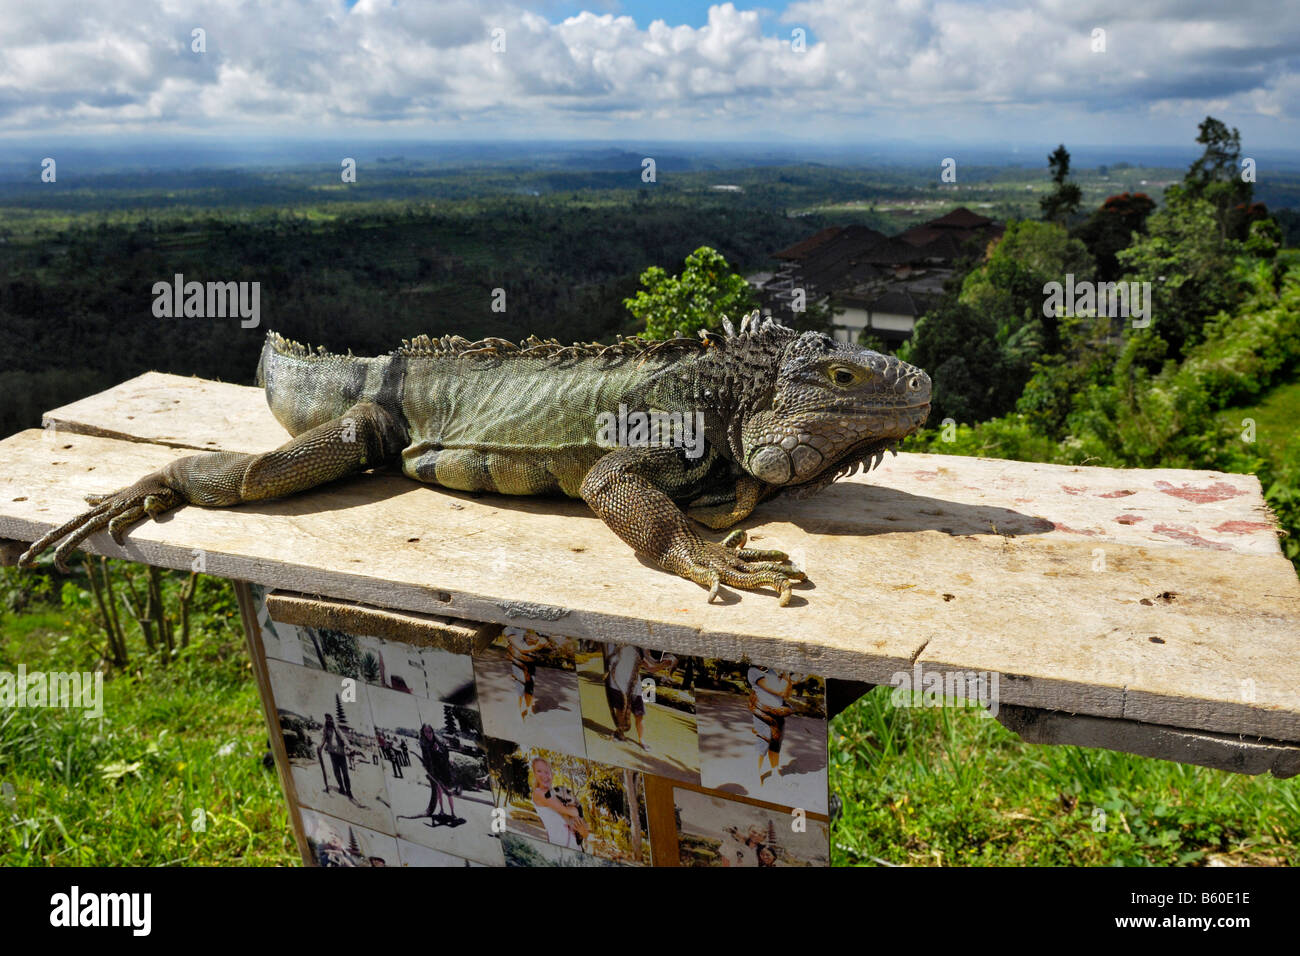 Iguana (Iguanidae) near Bedugul, Bali, Indonesia Stock Photo